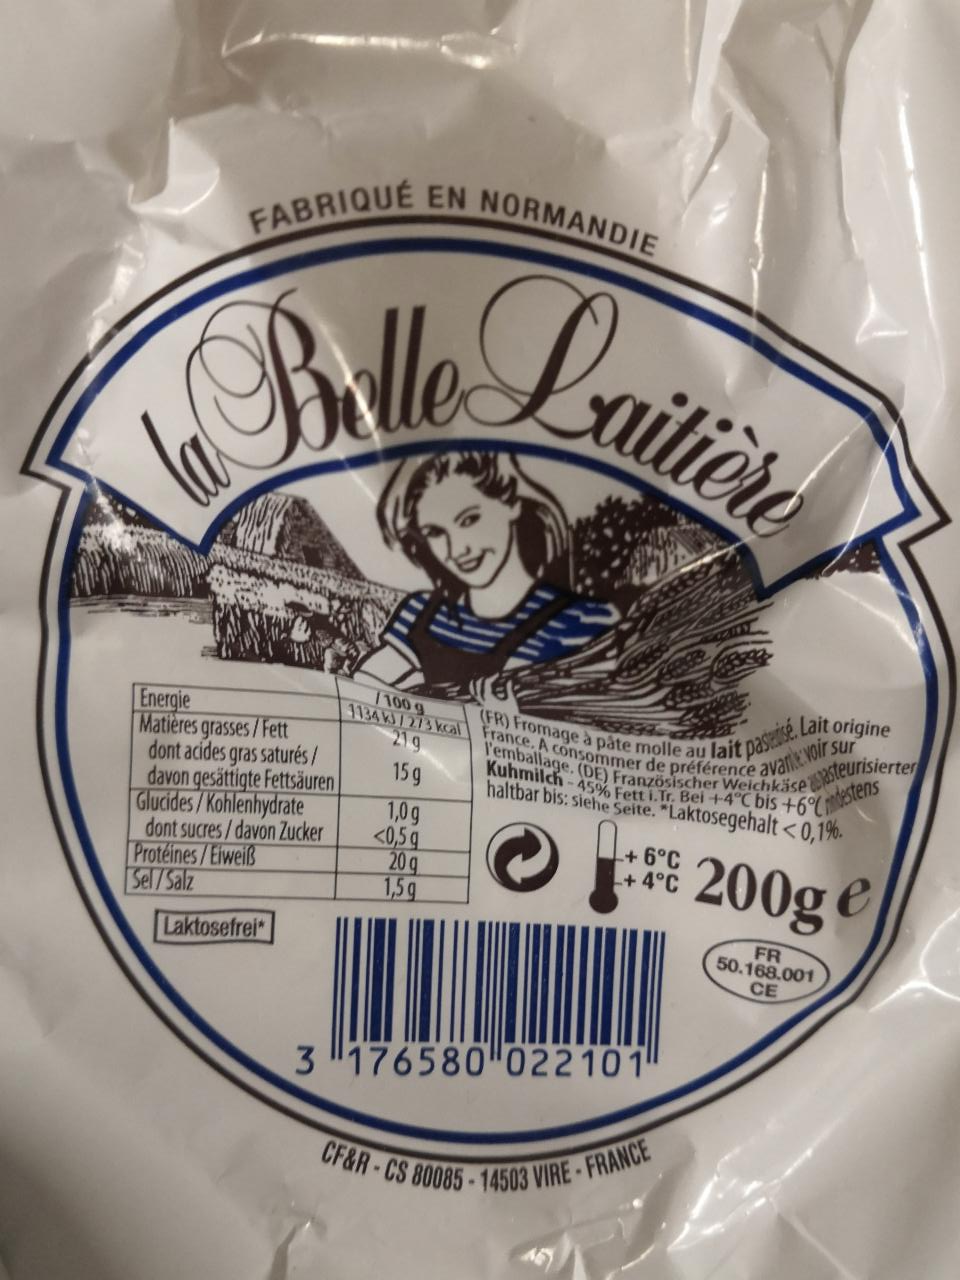 Fotografie - Francouzský měkký sýr La belle Laitiére s jogurtovou kulturou